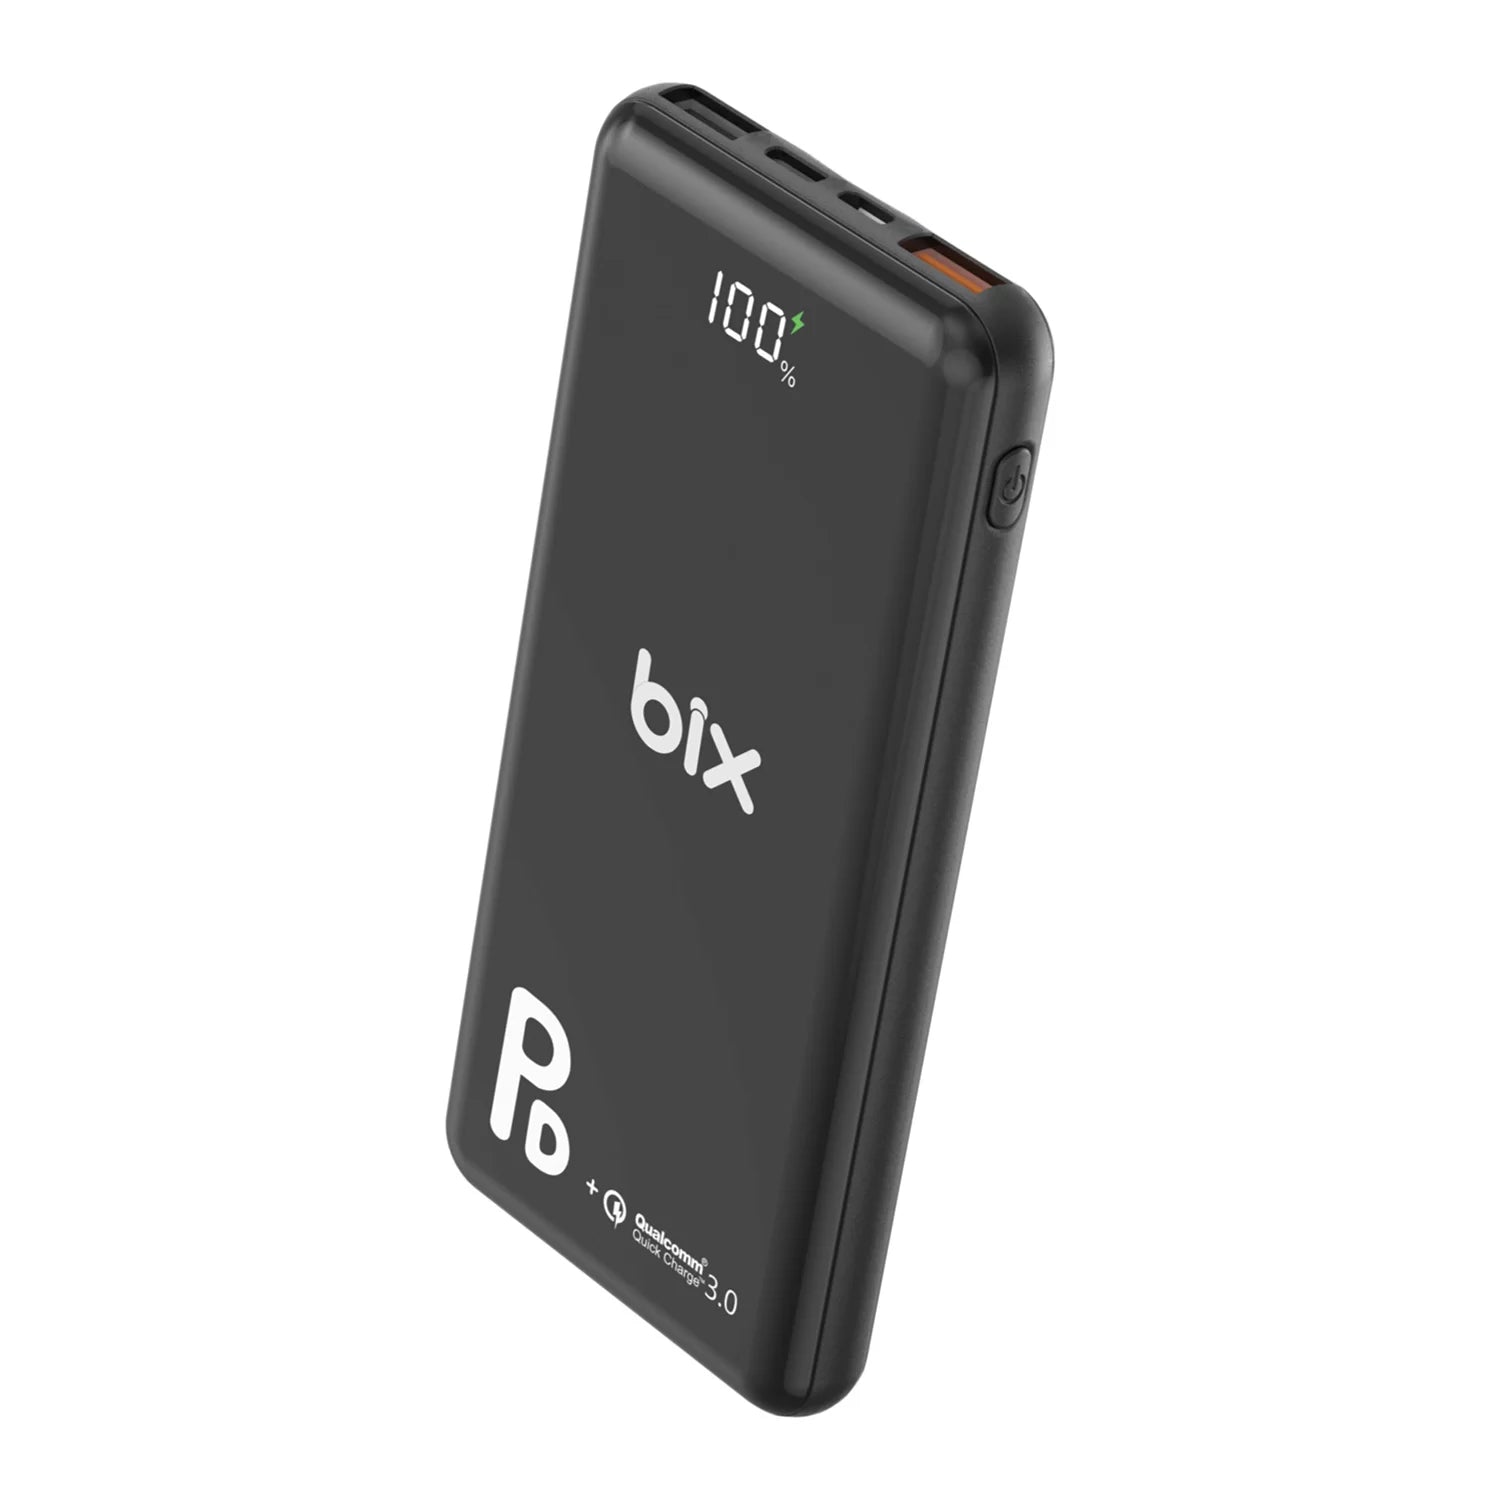 Bix 18W Üç Çıkışlı PD QC 3.0 10000 mAh Powerbank Siyah